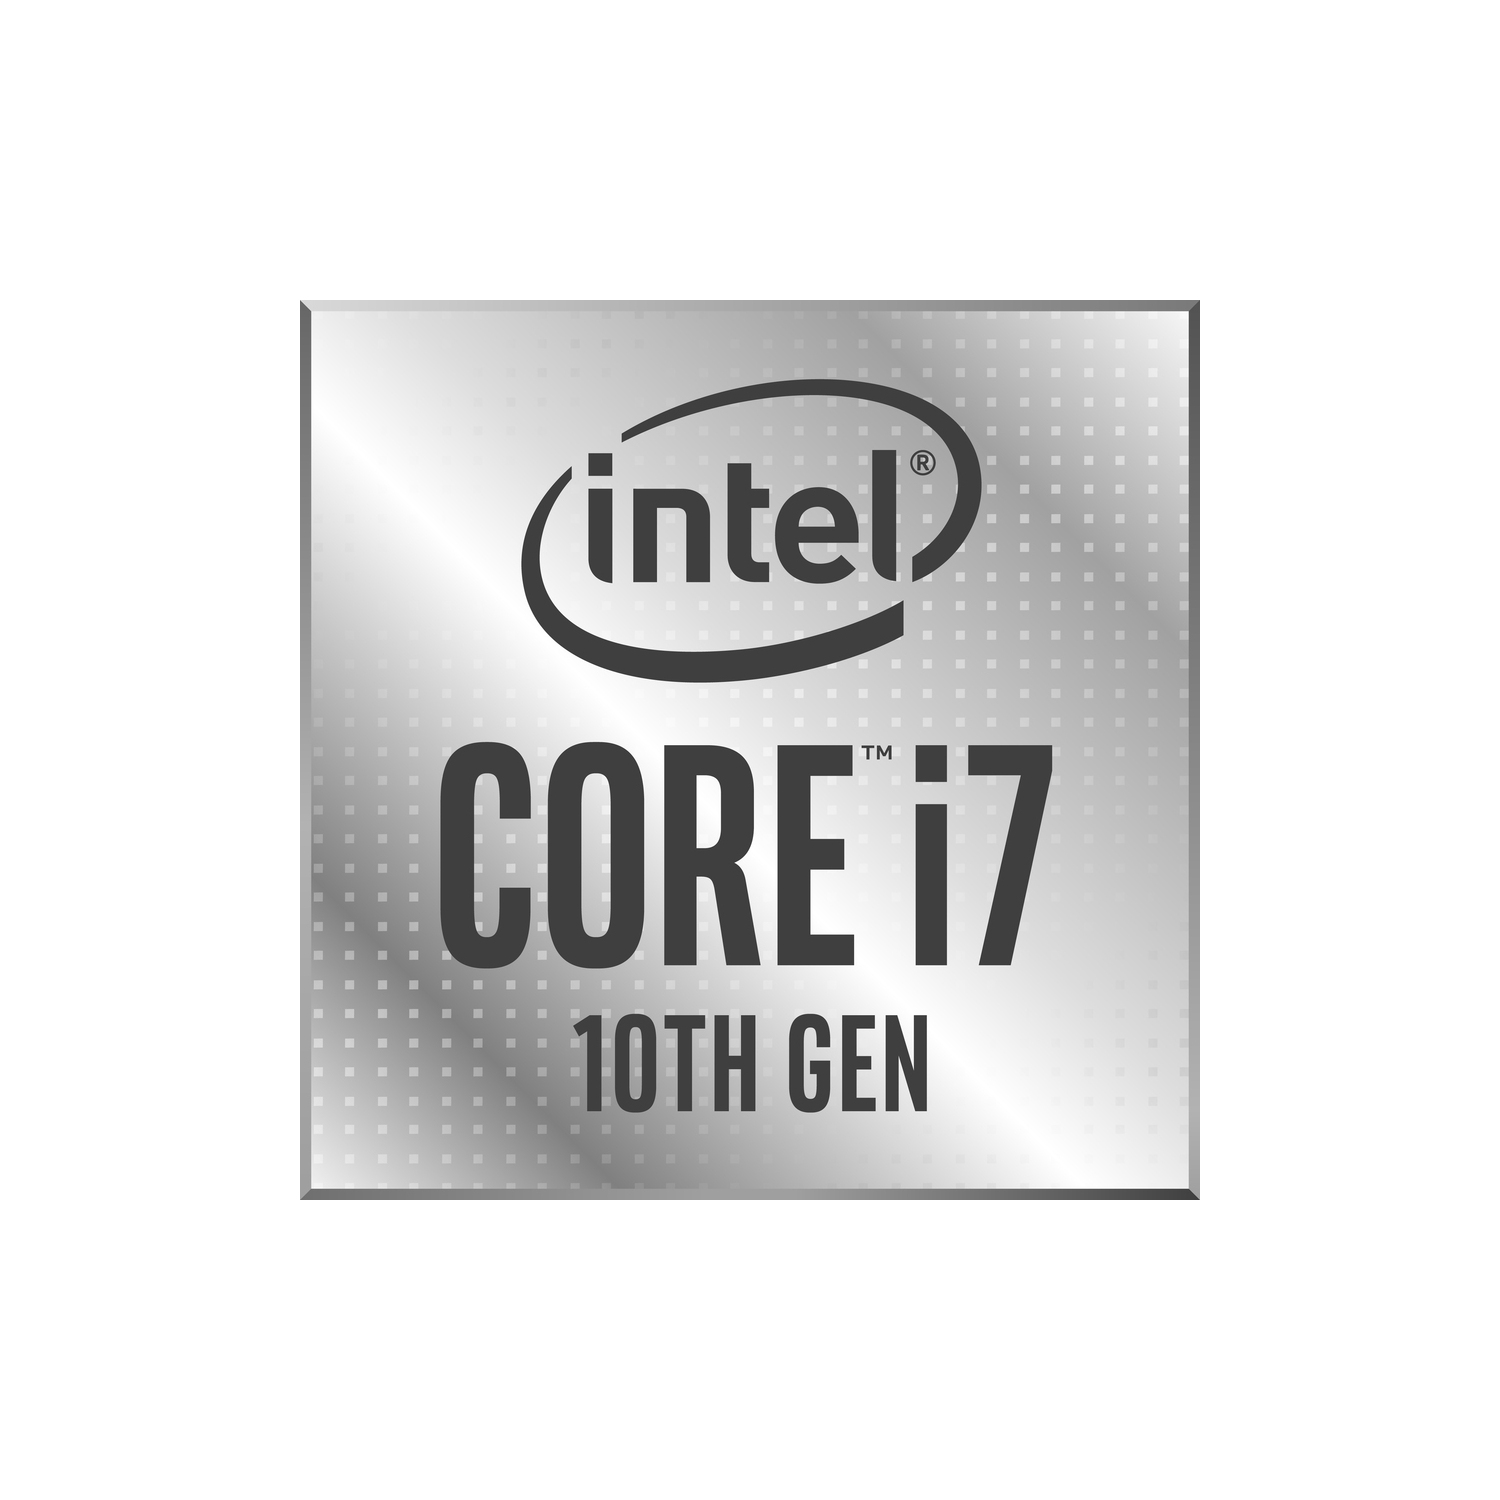 Intel Core i7 Octa-core i7-10700KF 3.80 GHz Desktop Processor